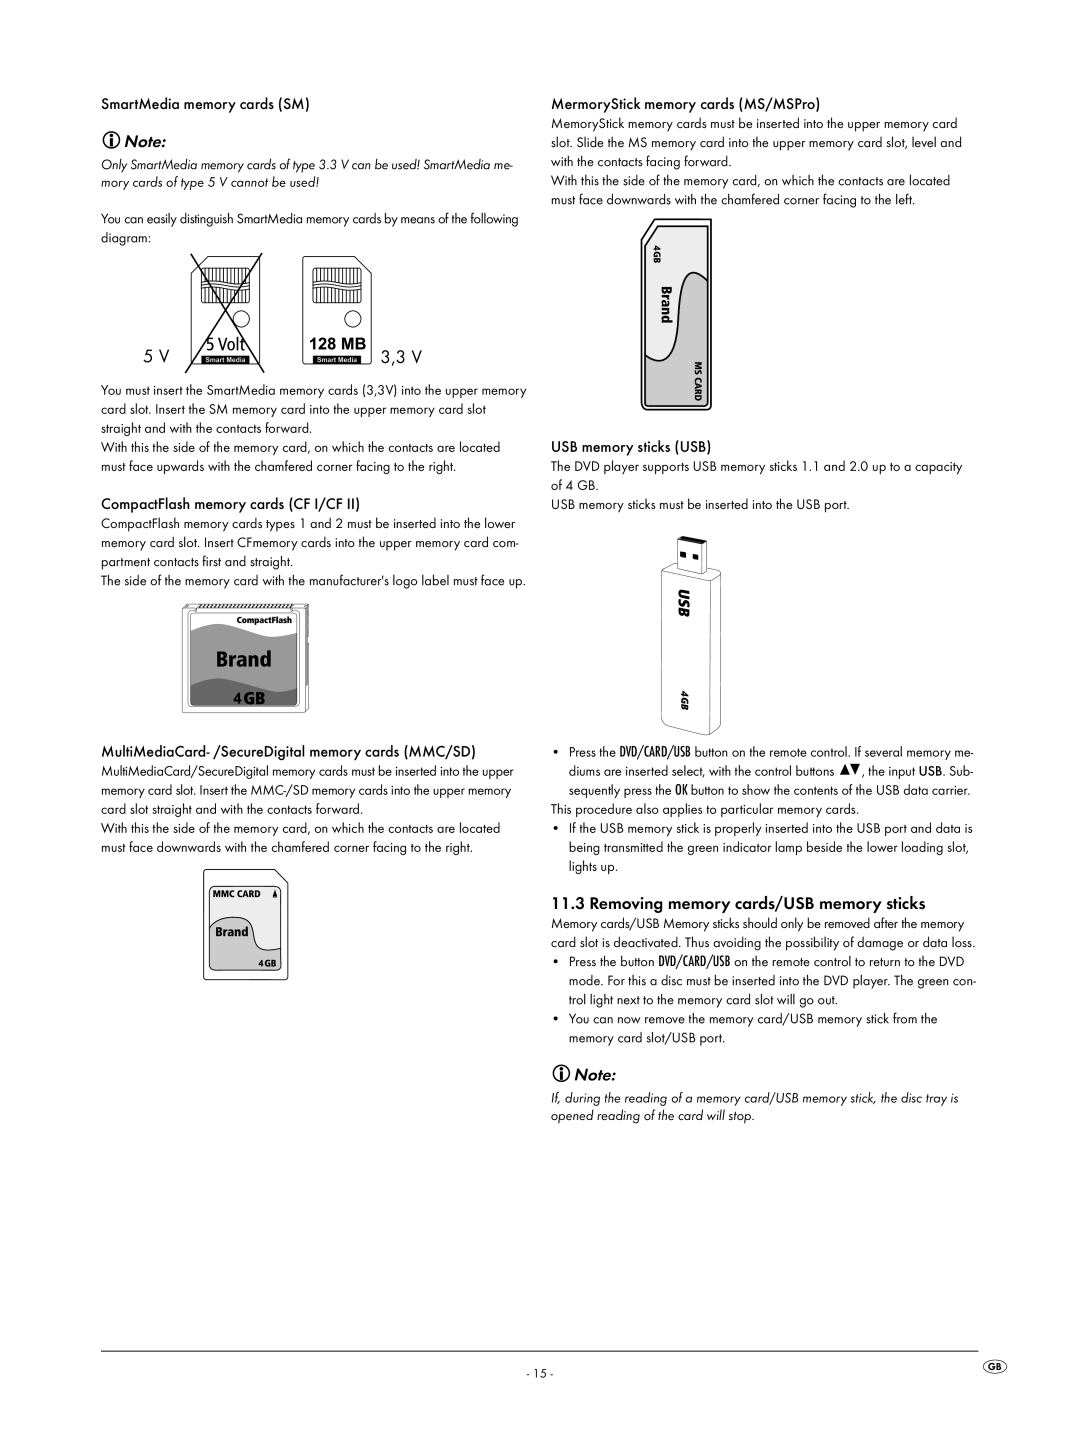 Silvercrest KH6519 Removing memory cards/USB memory sticks, SmartMedia memory cards SM, CompactFlash memory cards CF I/CF 